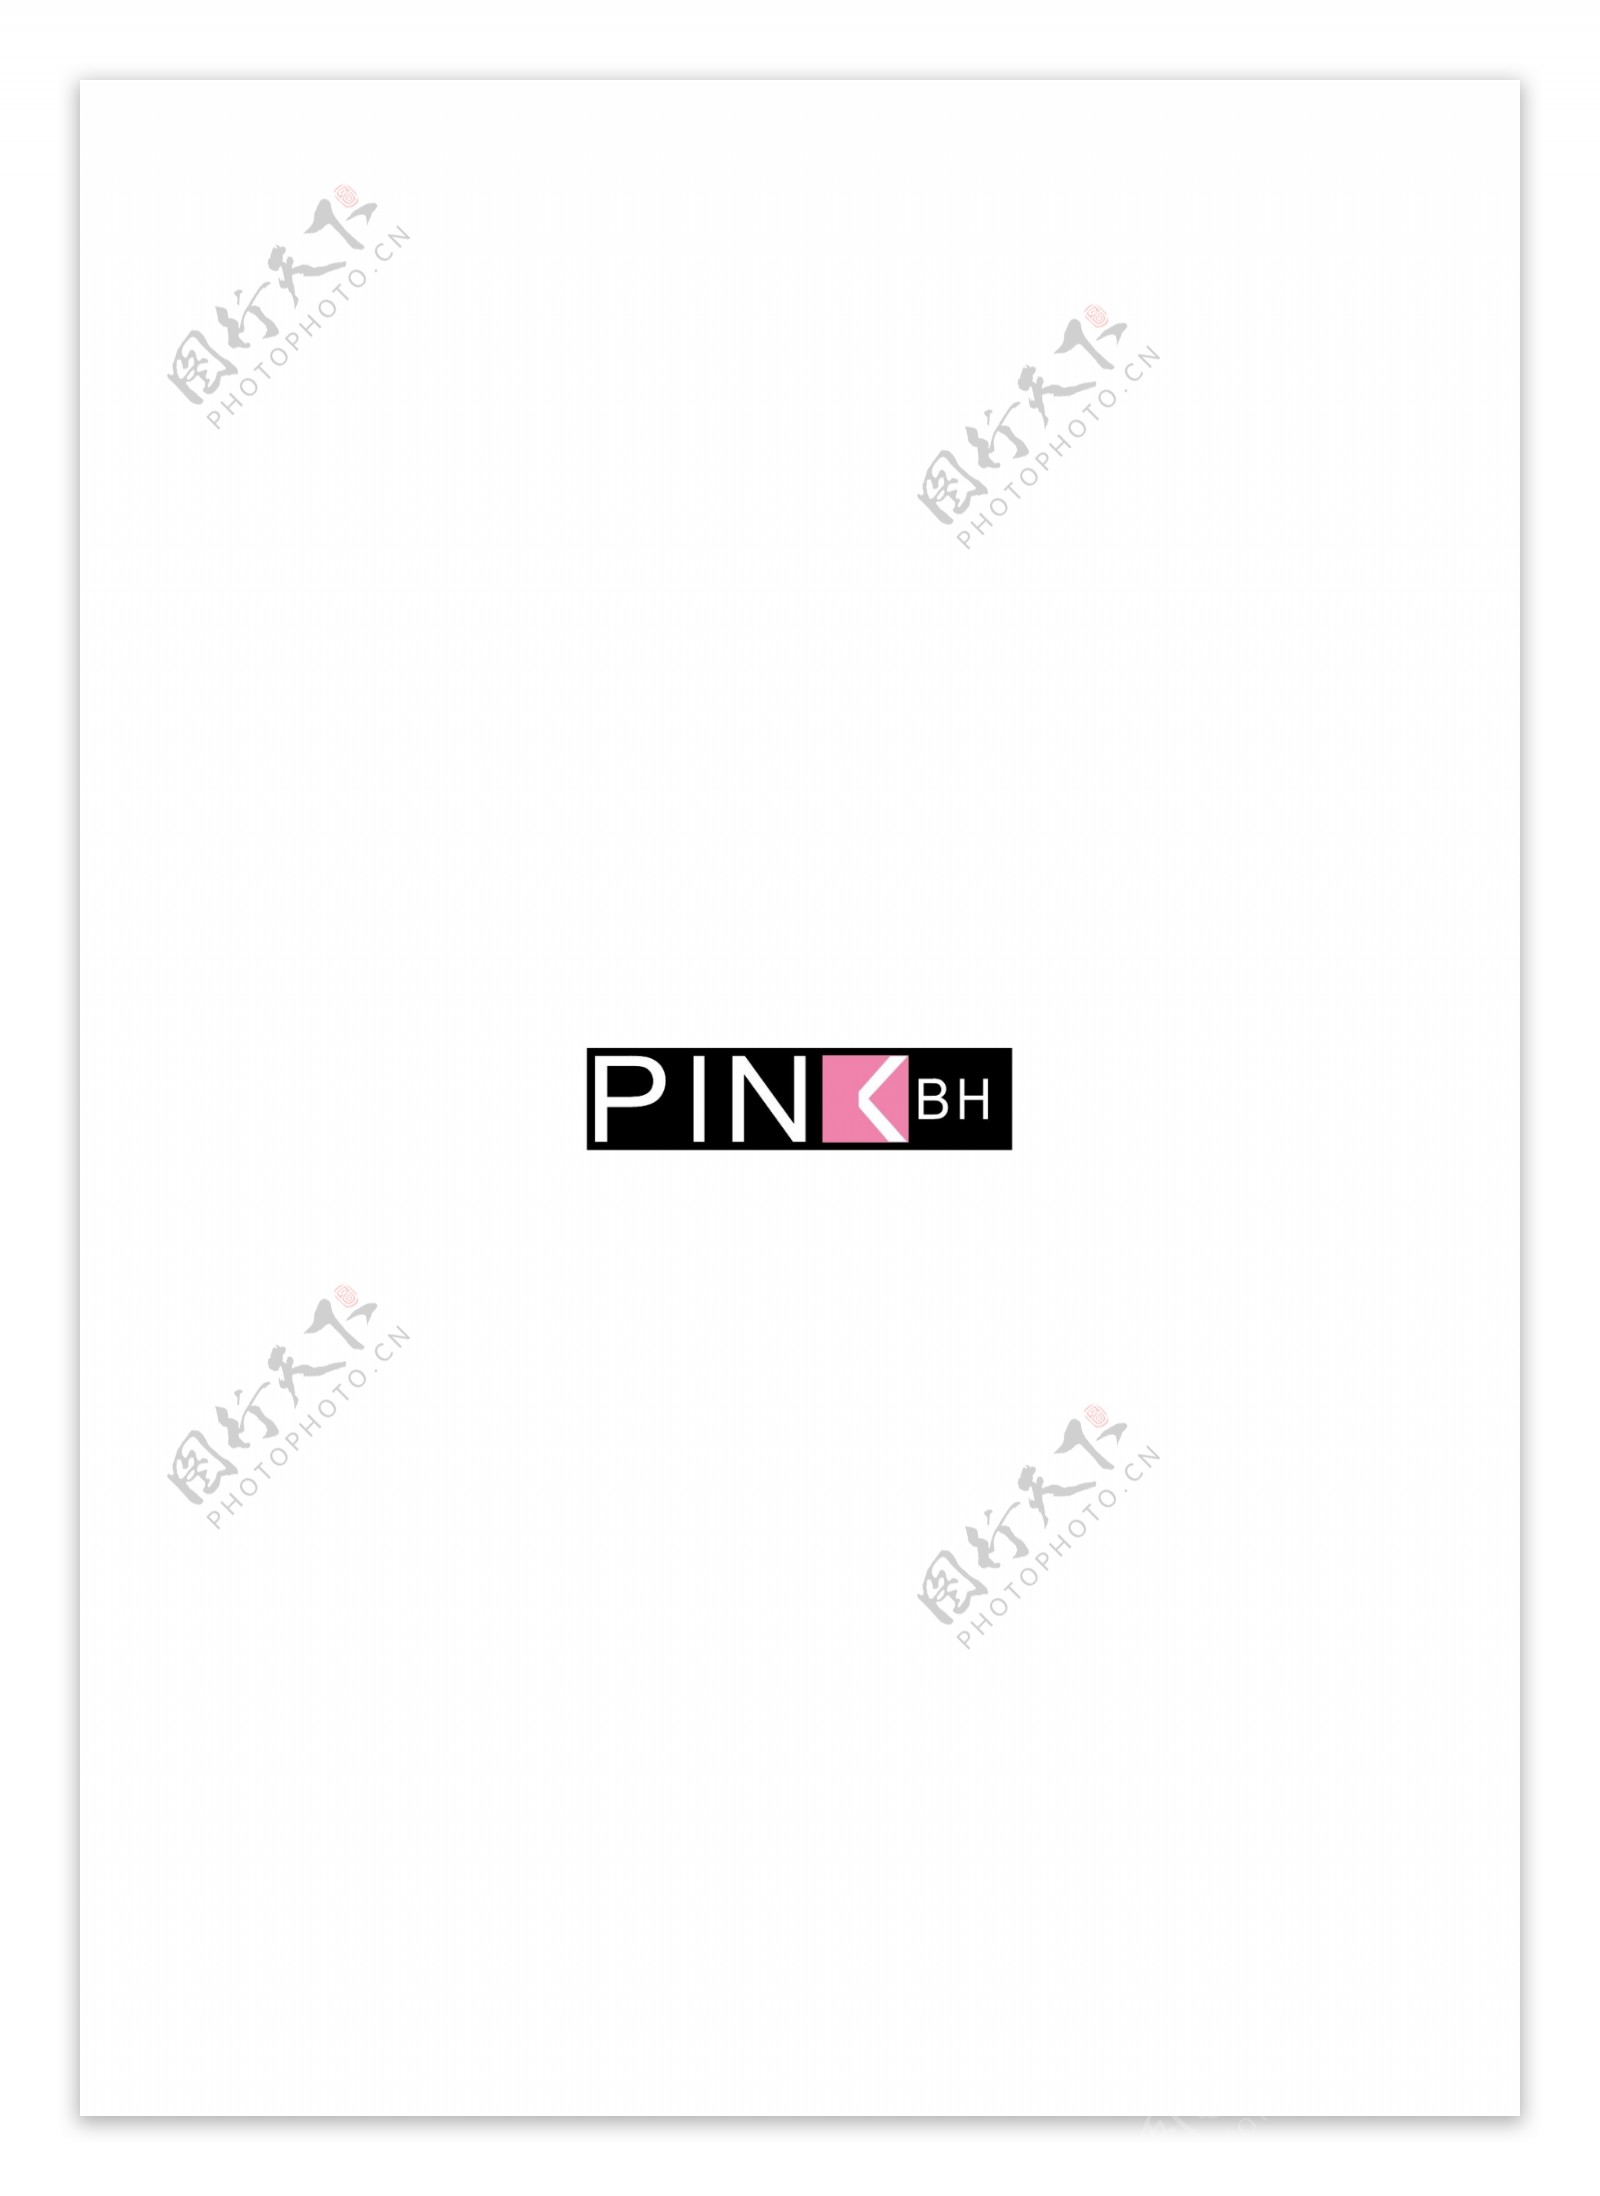 PinkBHlogo设计欣赏PinkBH传媒LOGO下载标志设计欣赏